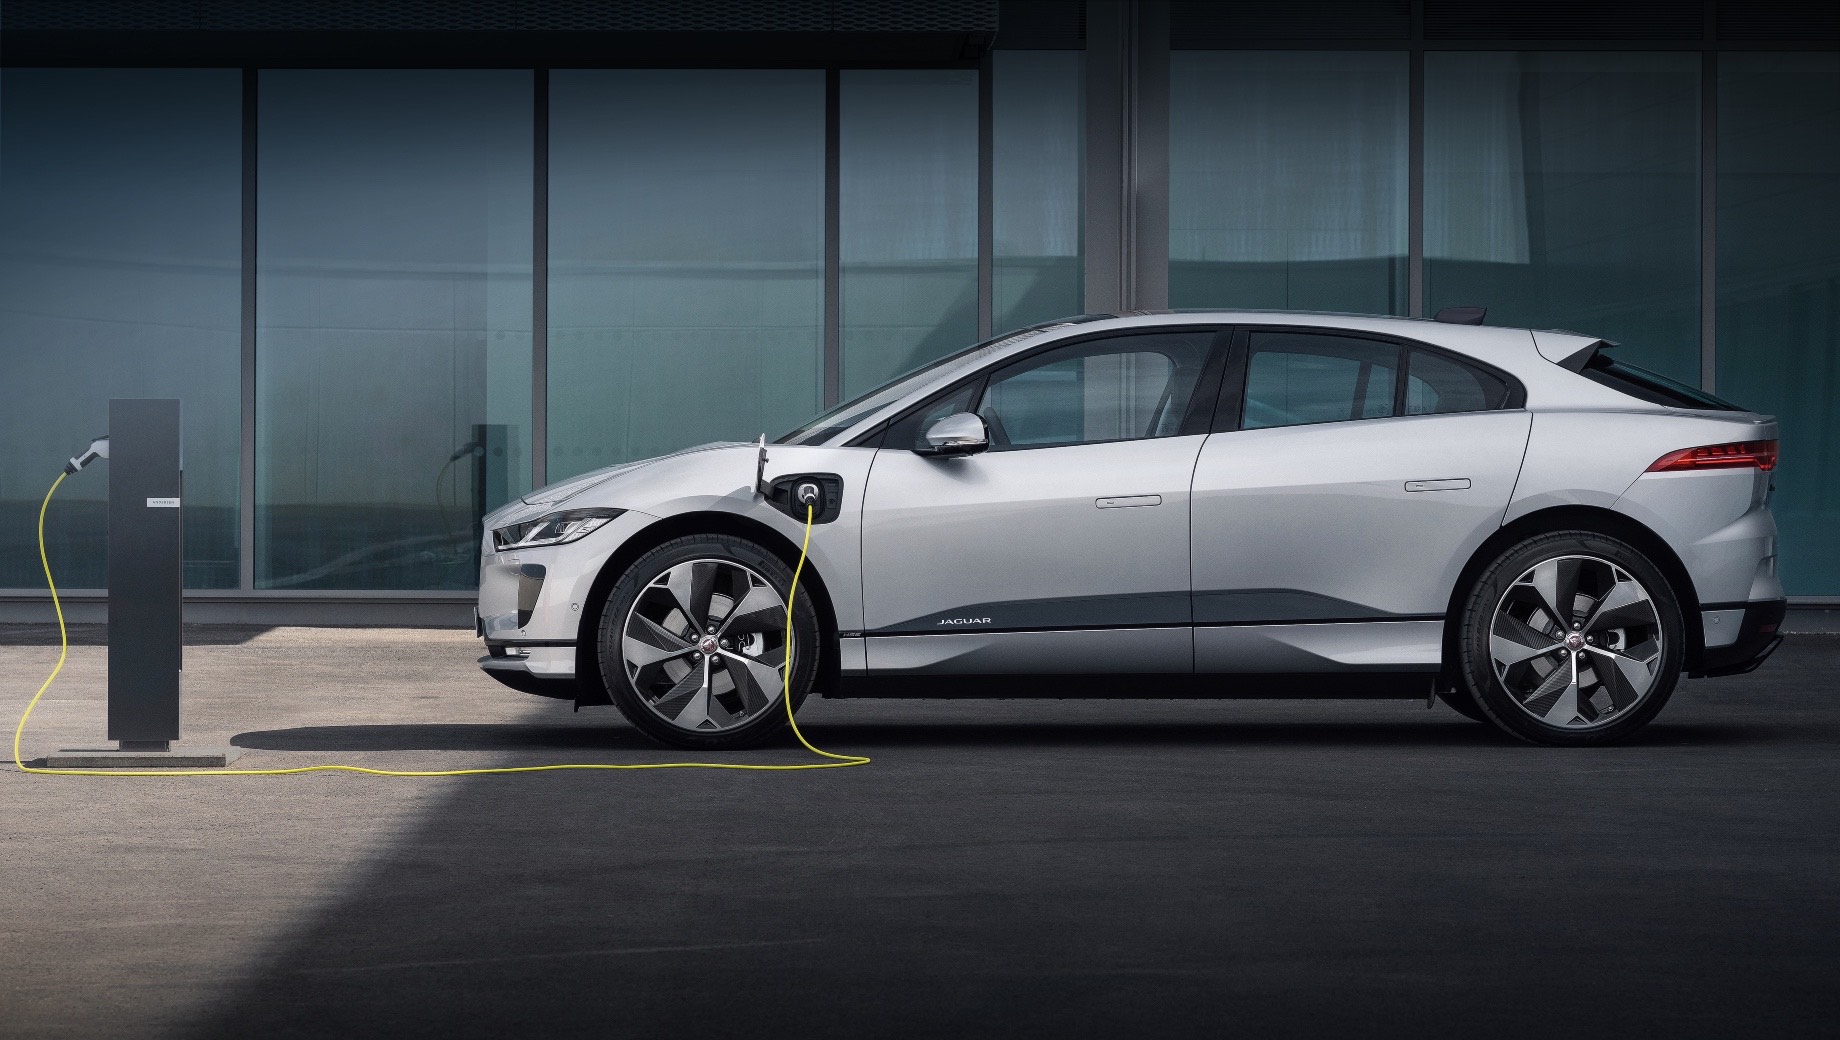 Jaguar j-pace. Сейчас у Ягуара в модельной линейке есть один электрокар ― пятидверный I-Pace. Но в 2021 году ожидается выход электрических моделей XJ и J-Pace, а после выйдет конкурент Тесле Model 3 ― компактный электрический автомобиль, который заменит теряющие популярность модели XE и XF.